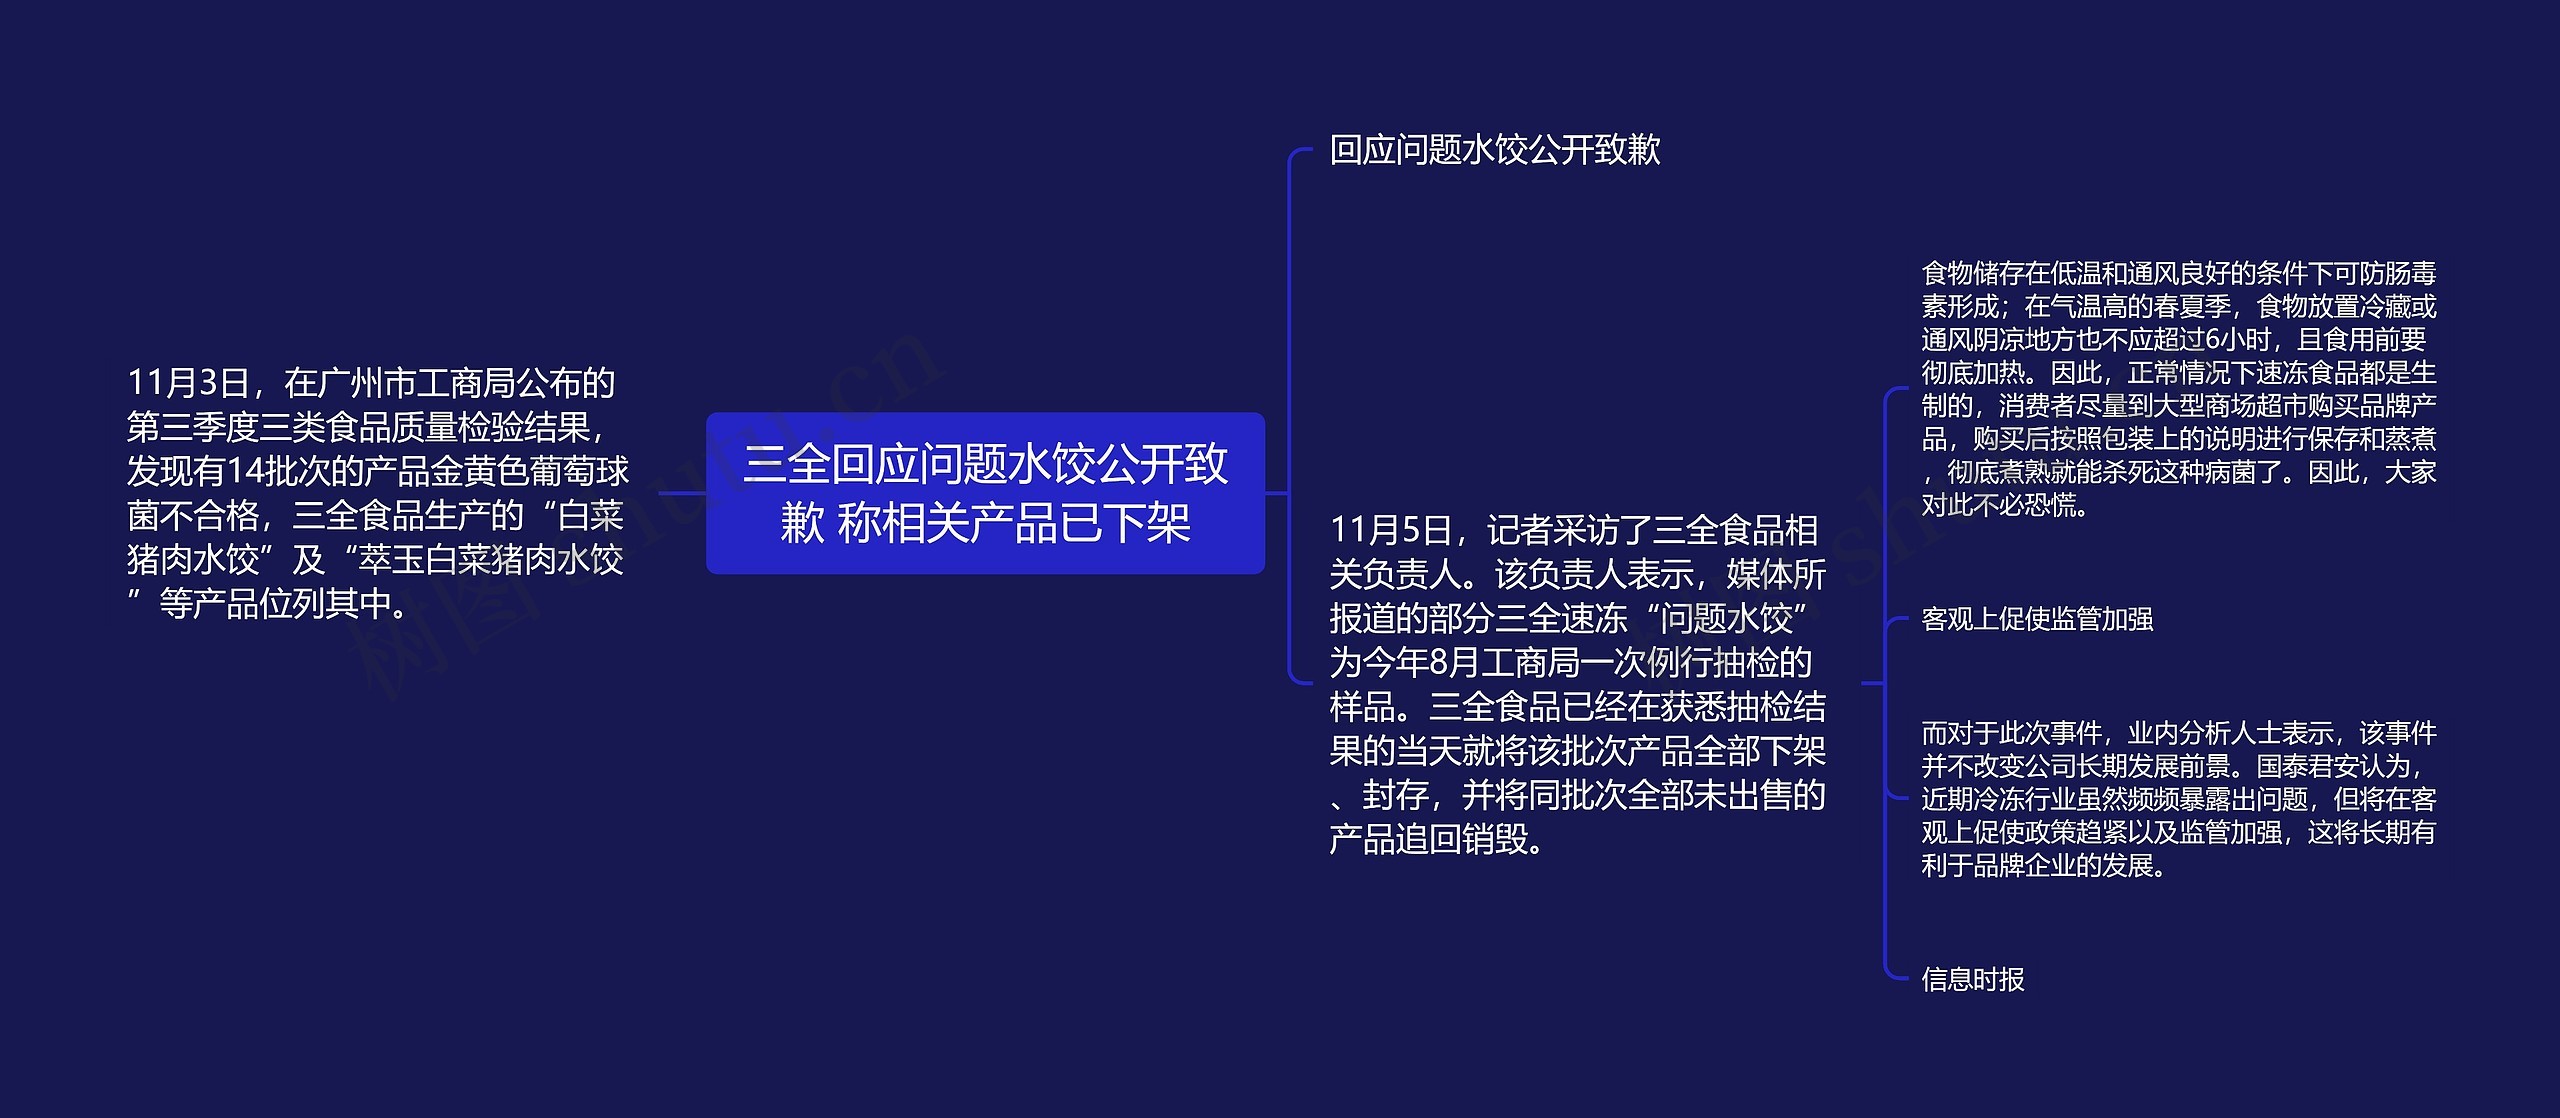 三全回应问题水饺公开致歉 称相关产品已下架思维导图